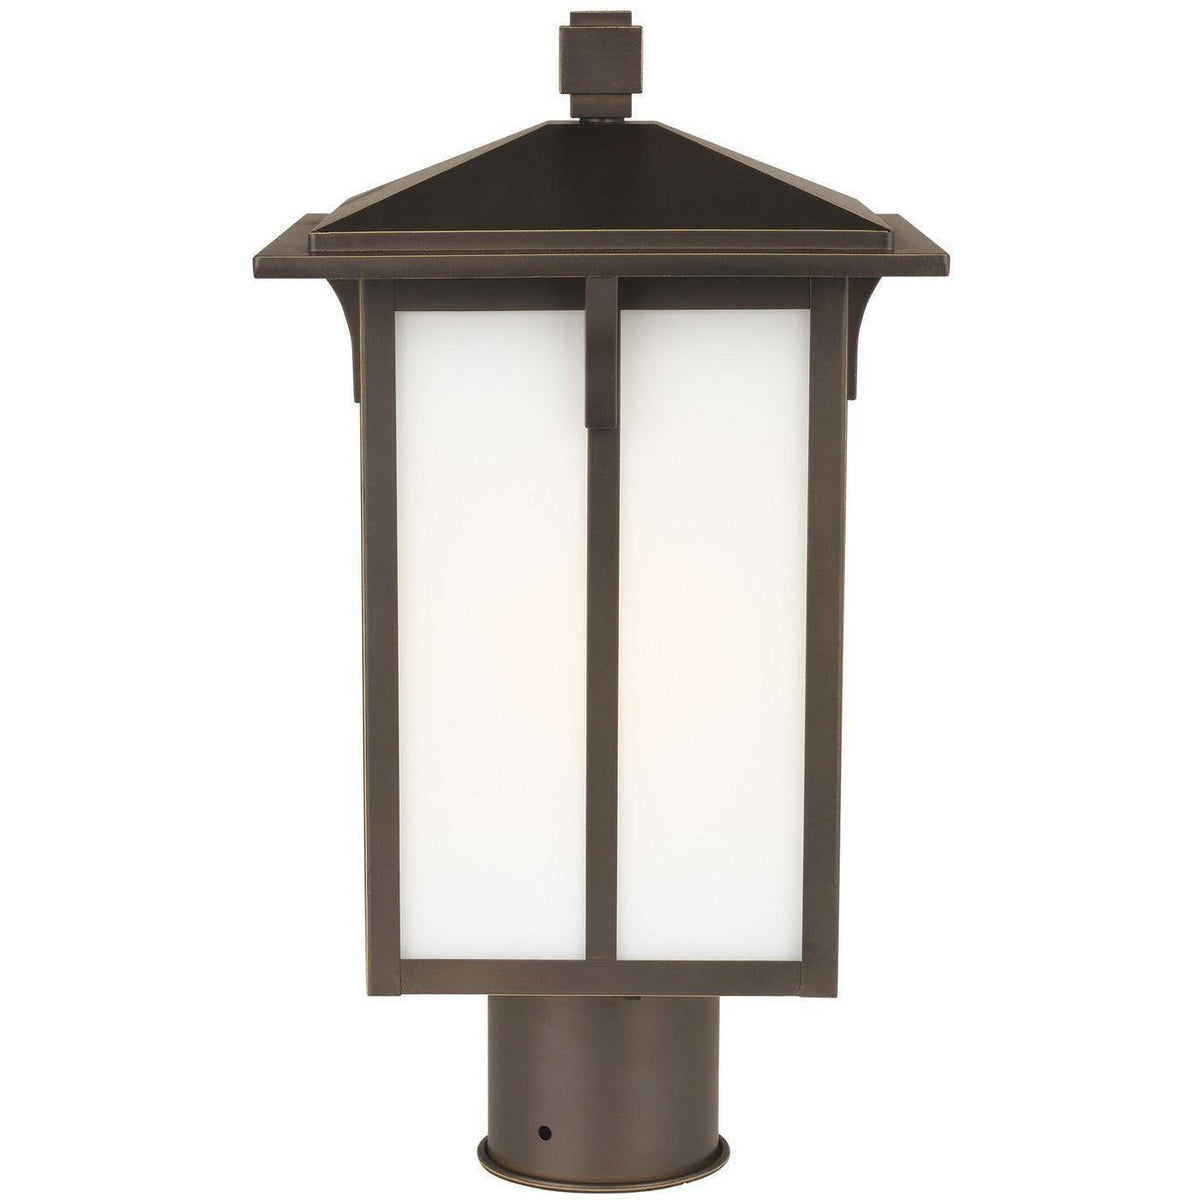 Generation Lighting - Tomek Outdoor Post Lantern - 8252701-71 | Montreal Lighting & Hardware